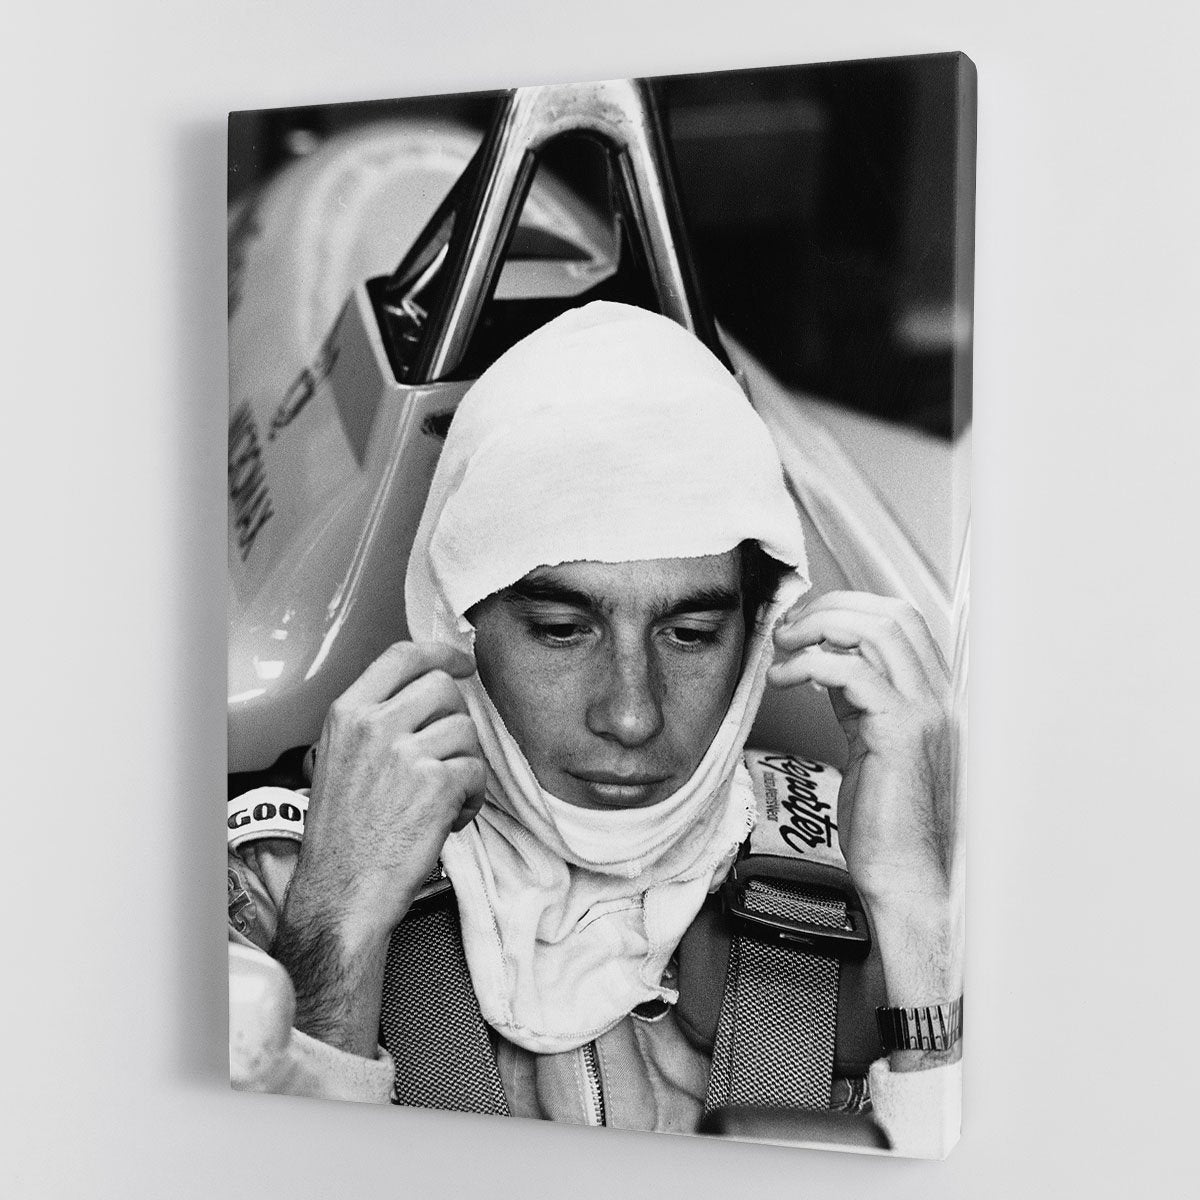 Racing driver Ayrton Senna at Silverstone Canvas Print or Poster